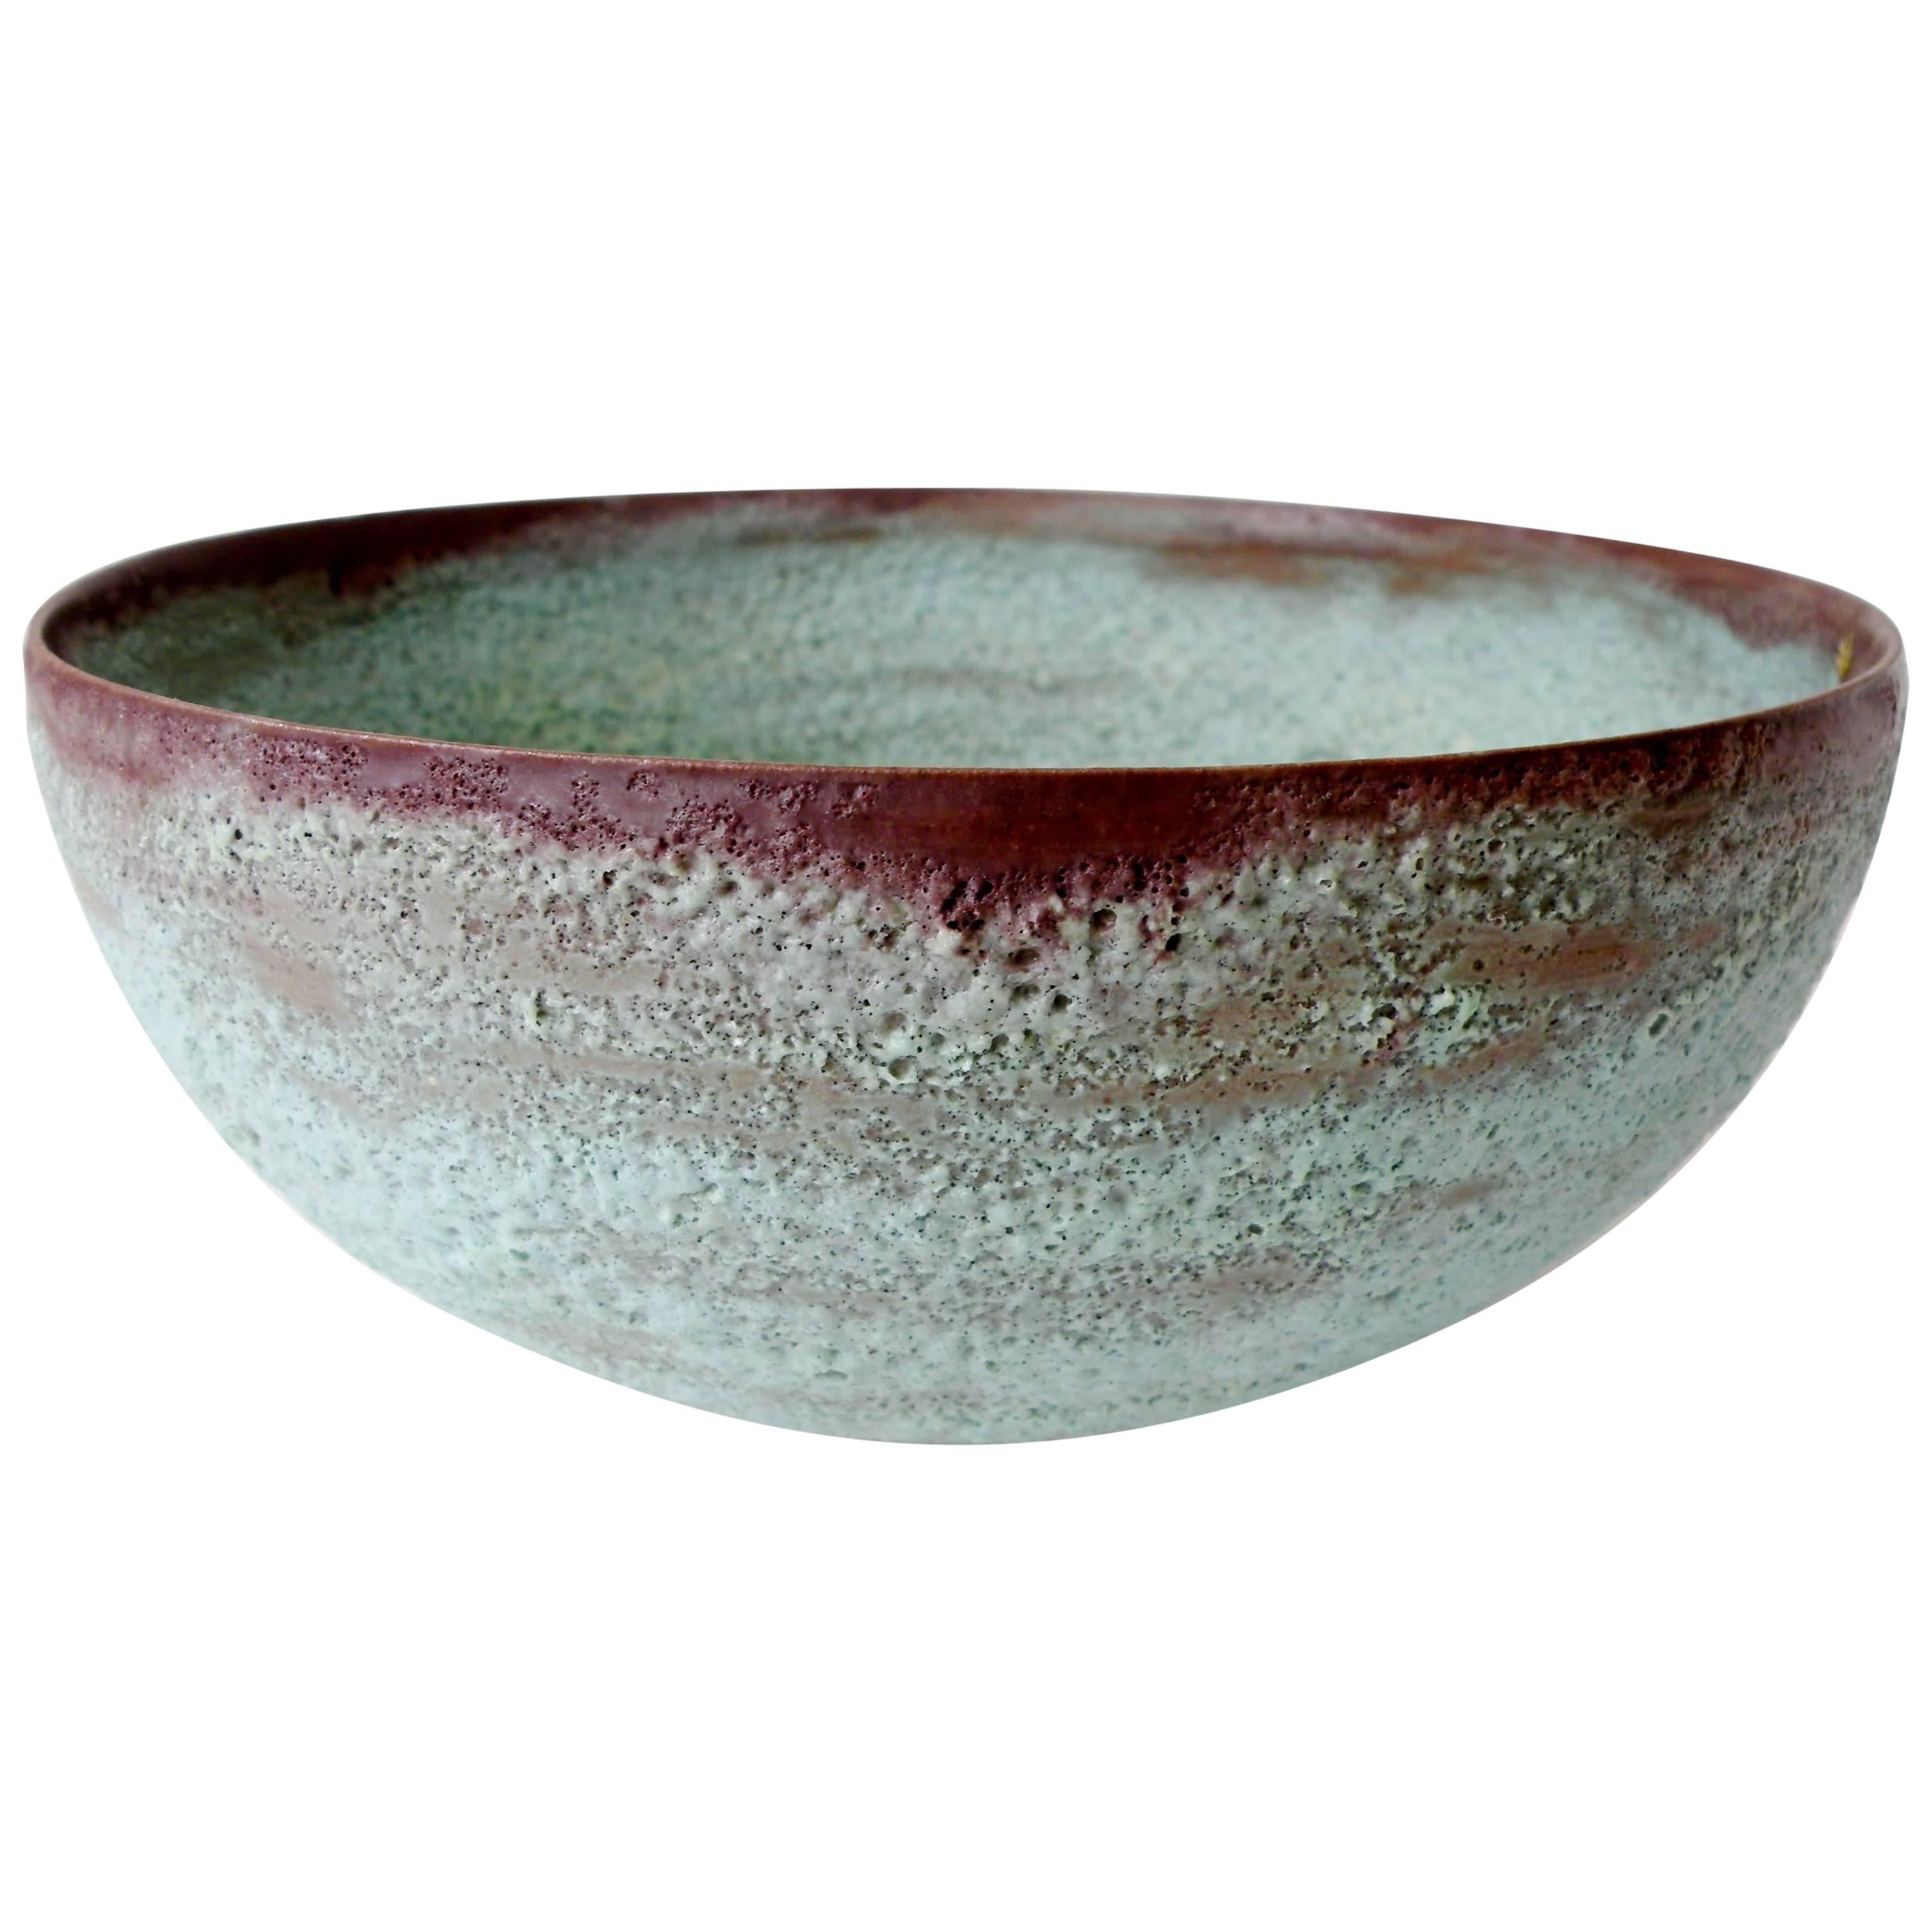 Beatrice Wood "Beato" Pottery Bowl Verdigris Volcanic Glaze